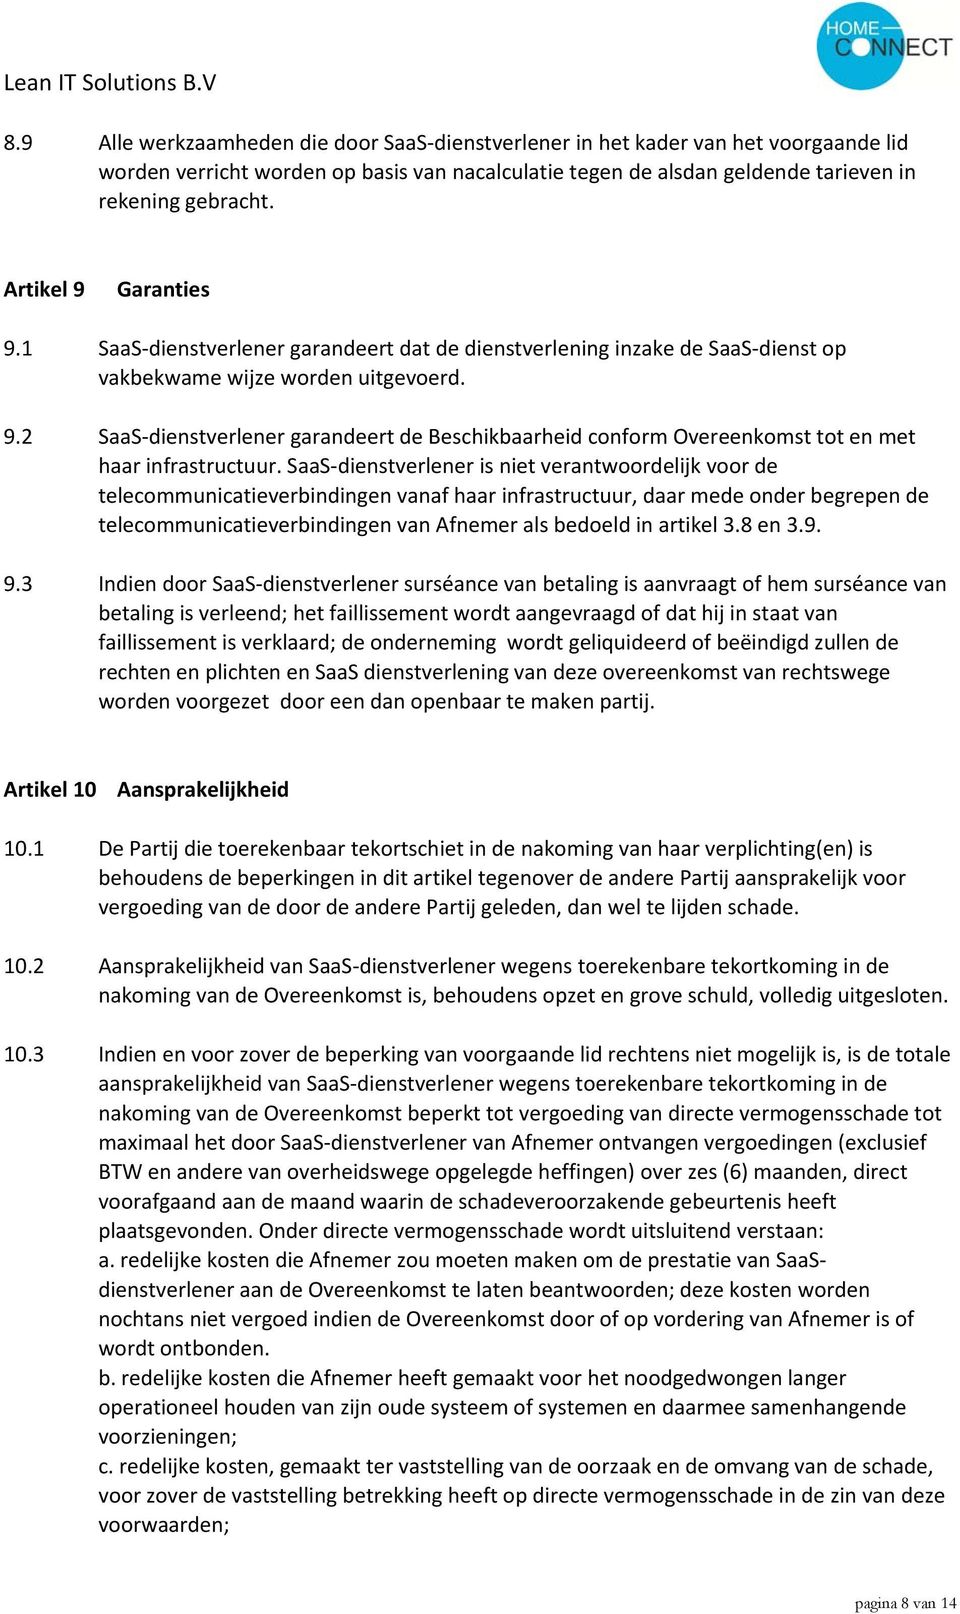 SaaS dienstverlener is niet verantwoordelijk voor de telecommunicatieverbindingen vanaf haar infrastructuur, daar mede onder begrepen de telecommunicatieverbindingen van Afnemer als bedoeld in